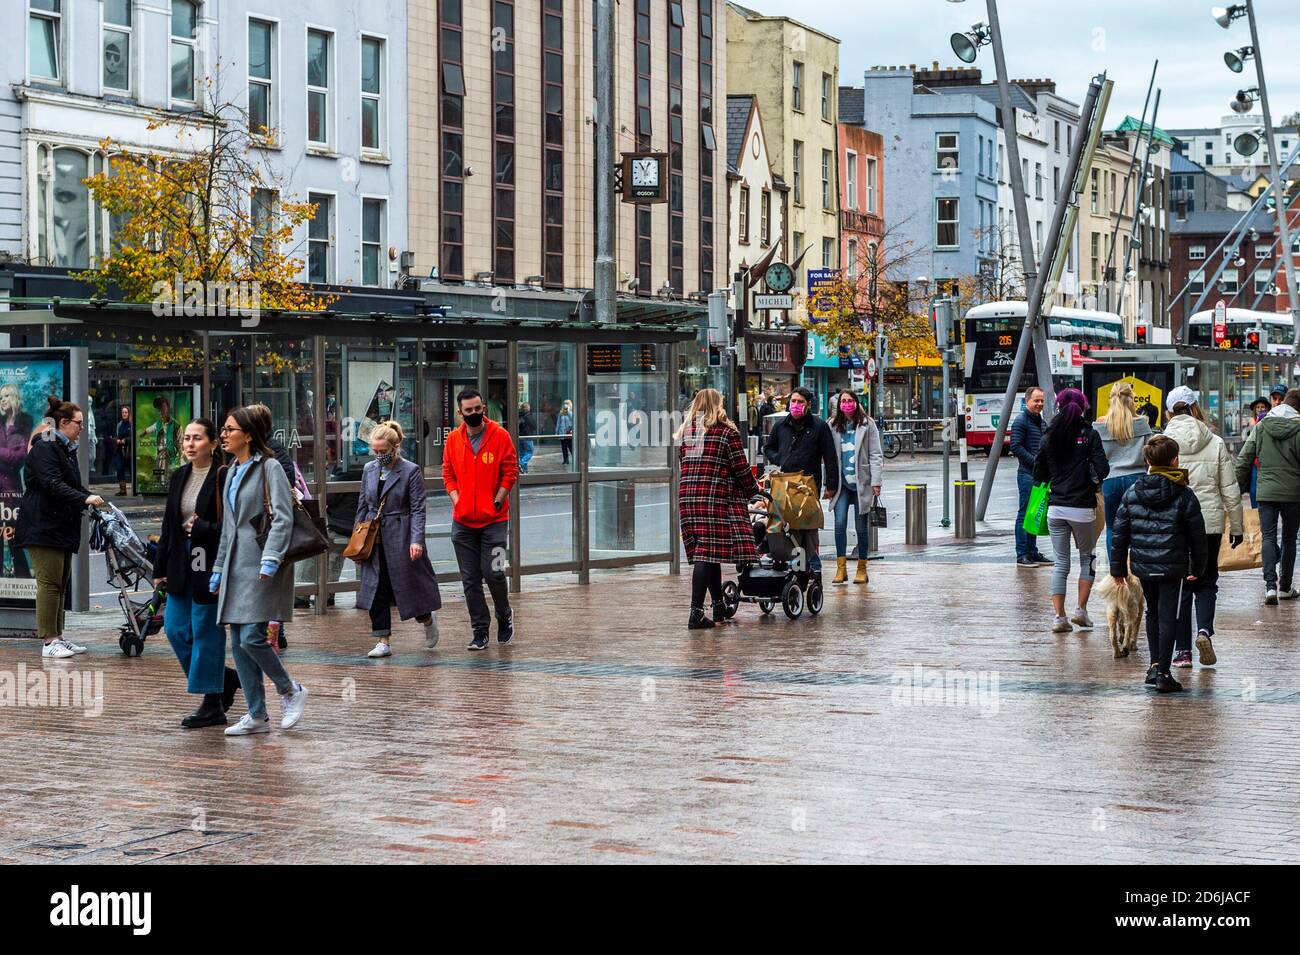 Cork, Irlanda. 17 ottobre 2020. Il centro della città di Cork era molto affollato con gli acquirenti oggi prima di un possibile passaggio al livello 4 o 5 COVID-19 restrizioni, in quanto il governo irlandese sta considerando di andare a un blocco totale. Credit: AG News/Alamy Live News. Foto Stock